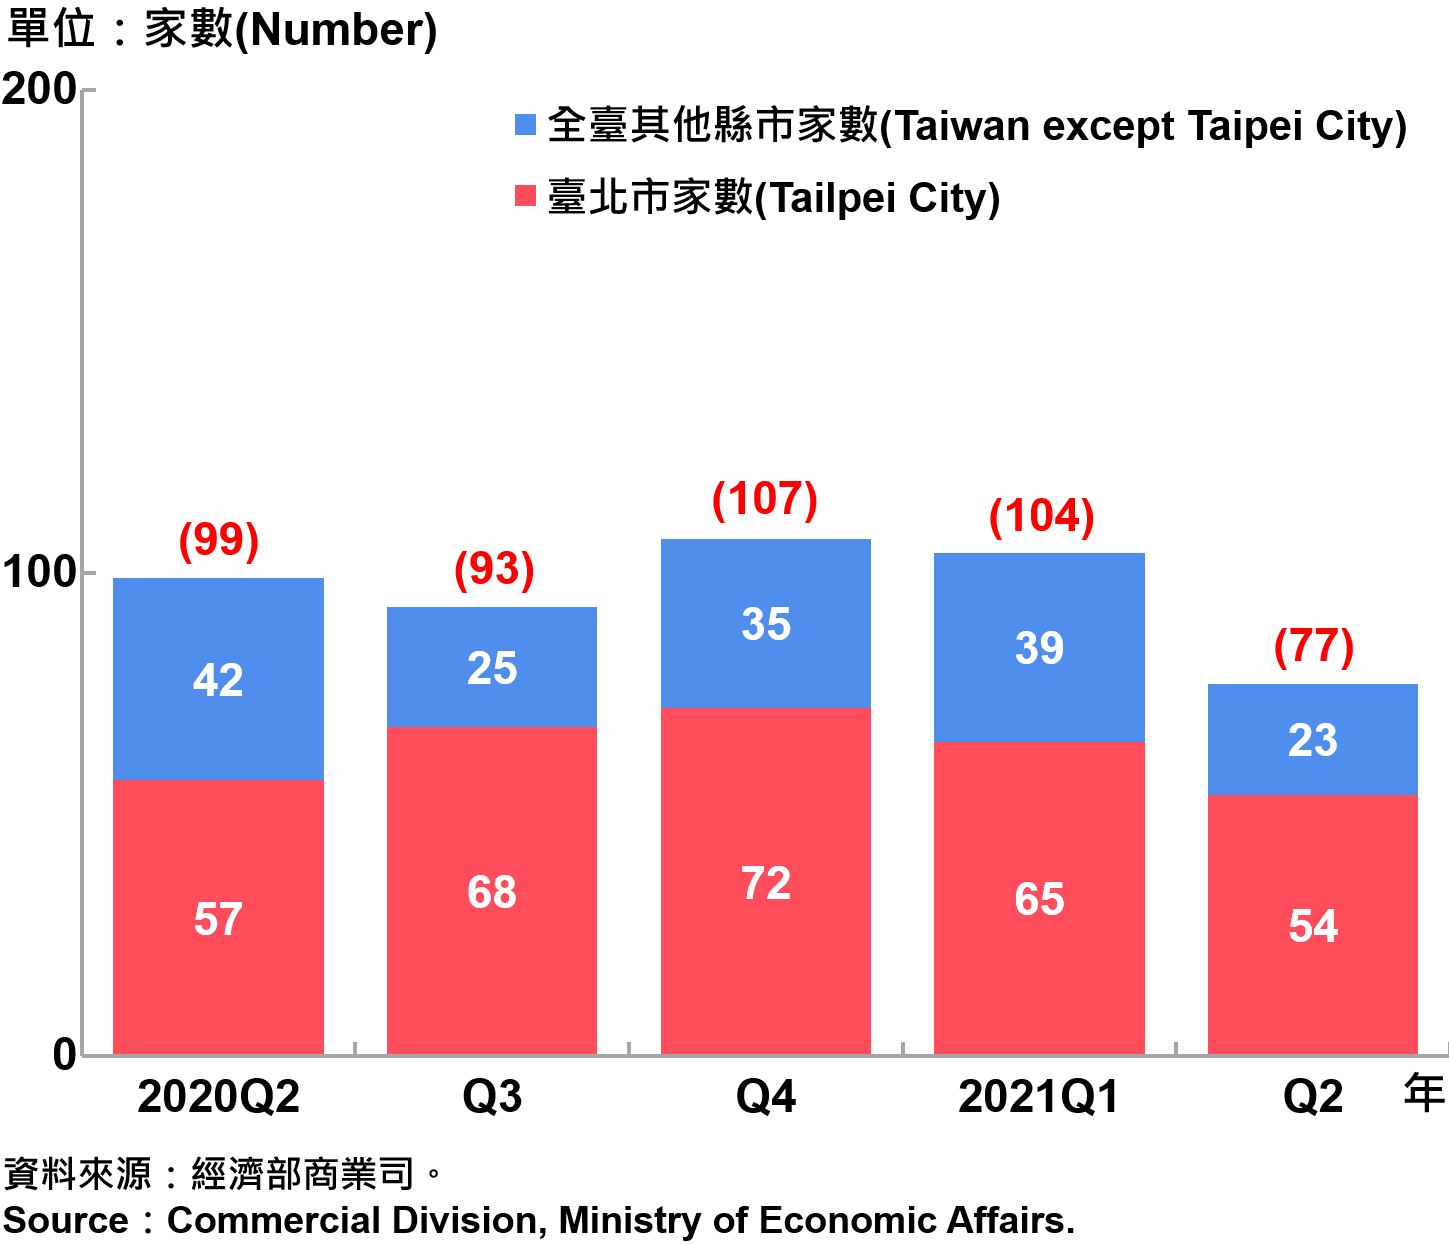 臺北市外商公司新設立家數—20201Q2 Number of Newly Established Foreign Companies in Taipei City—2021Q2